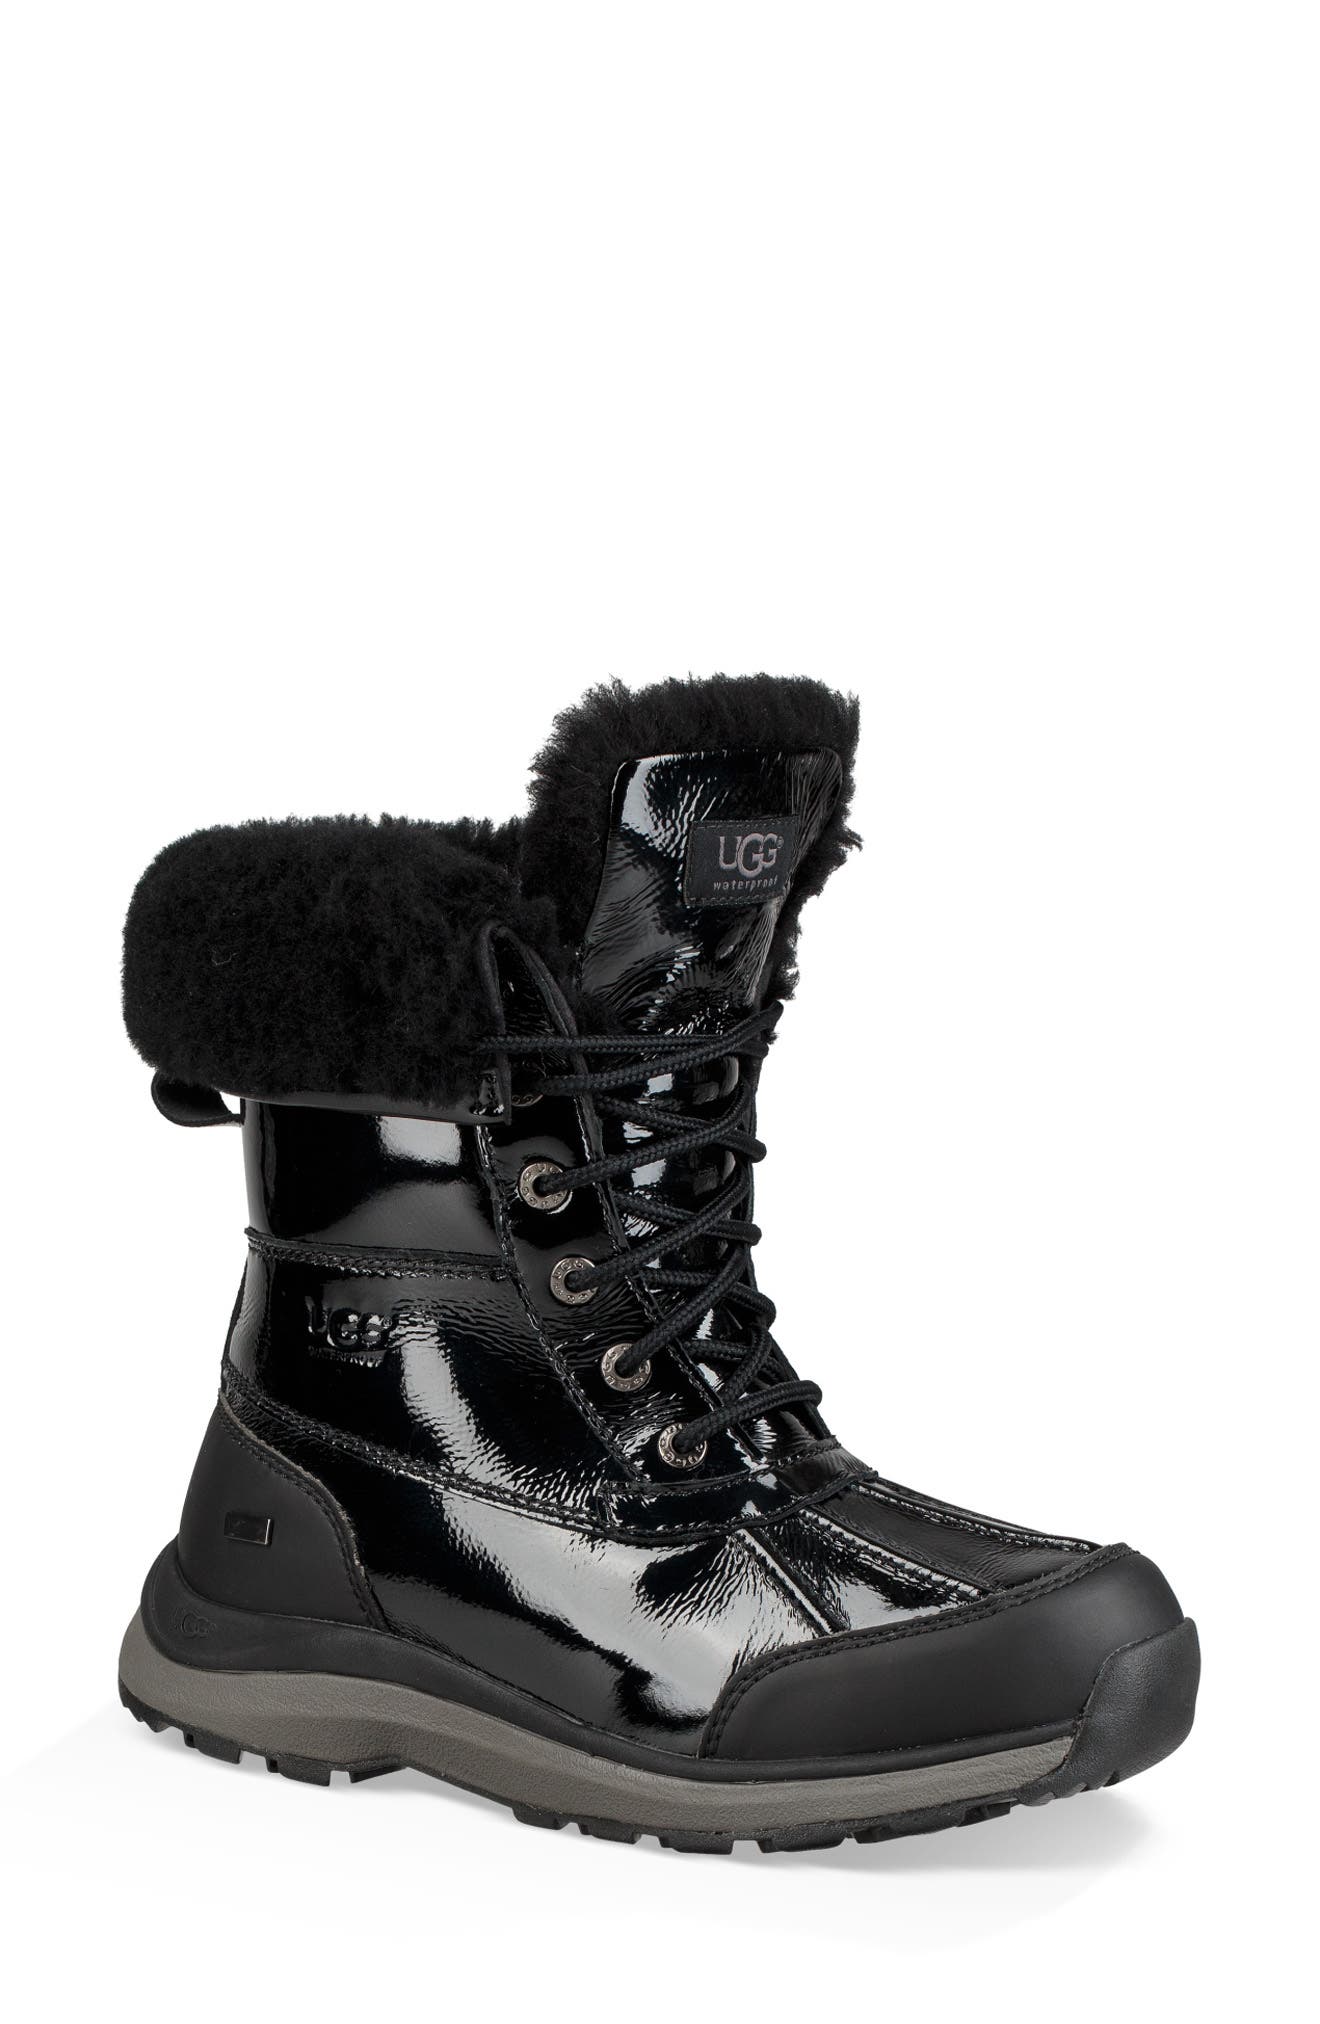 uggs winter boots adirondack